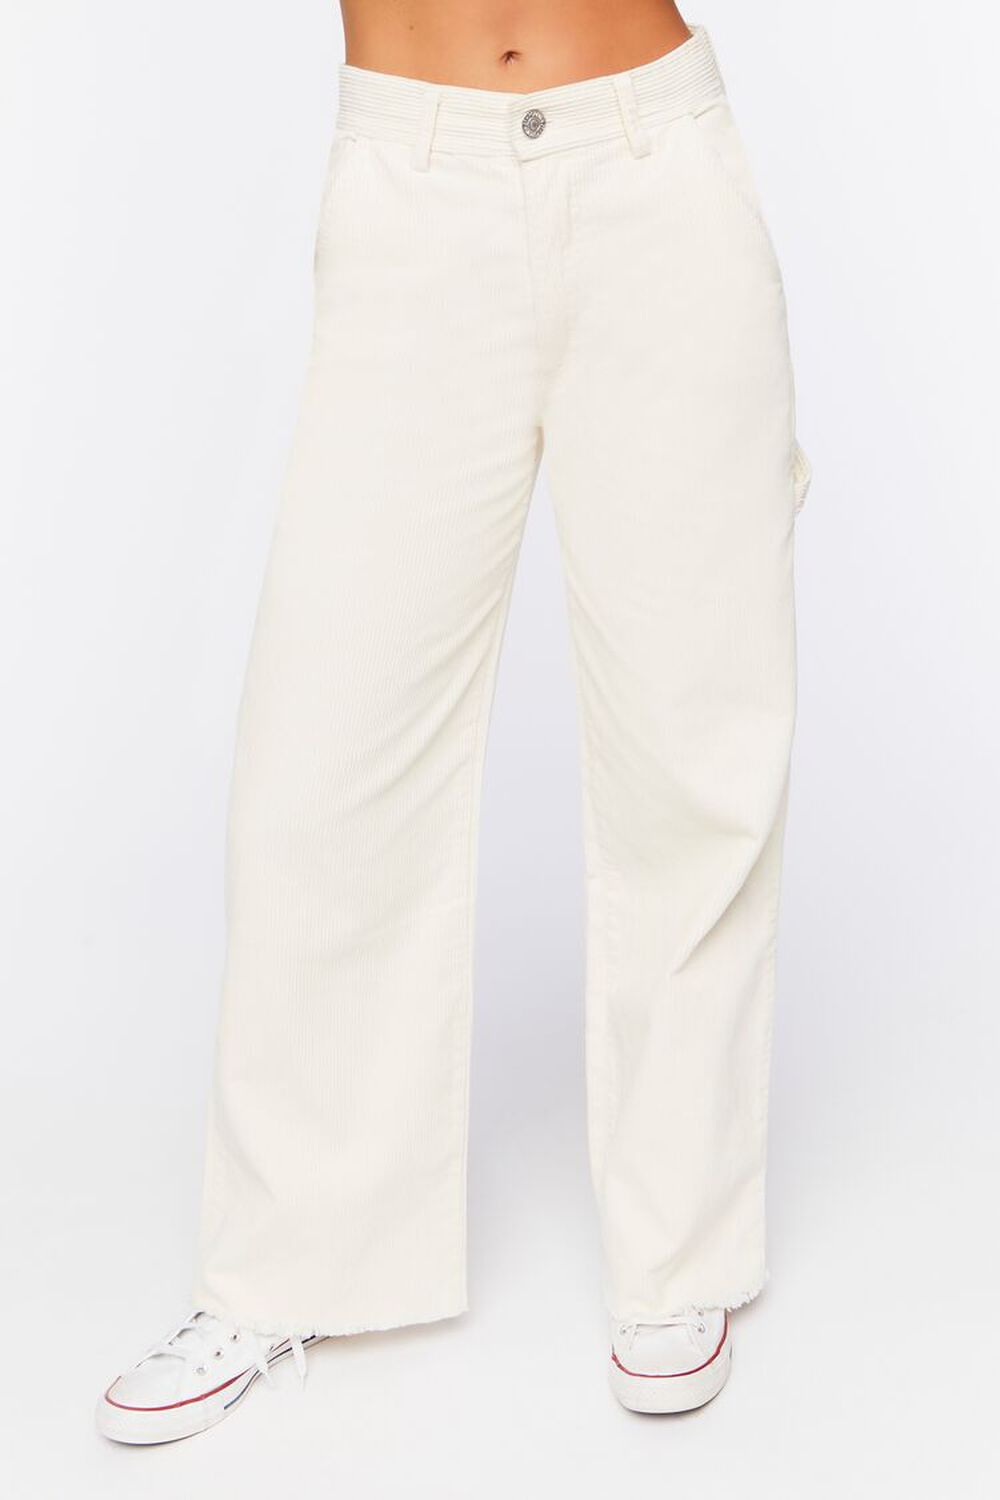 Frayed Corduroy Mid-Rise Pants, image 2